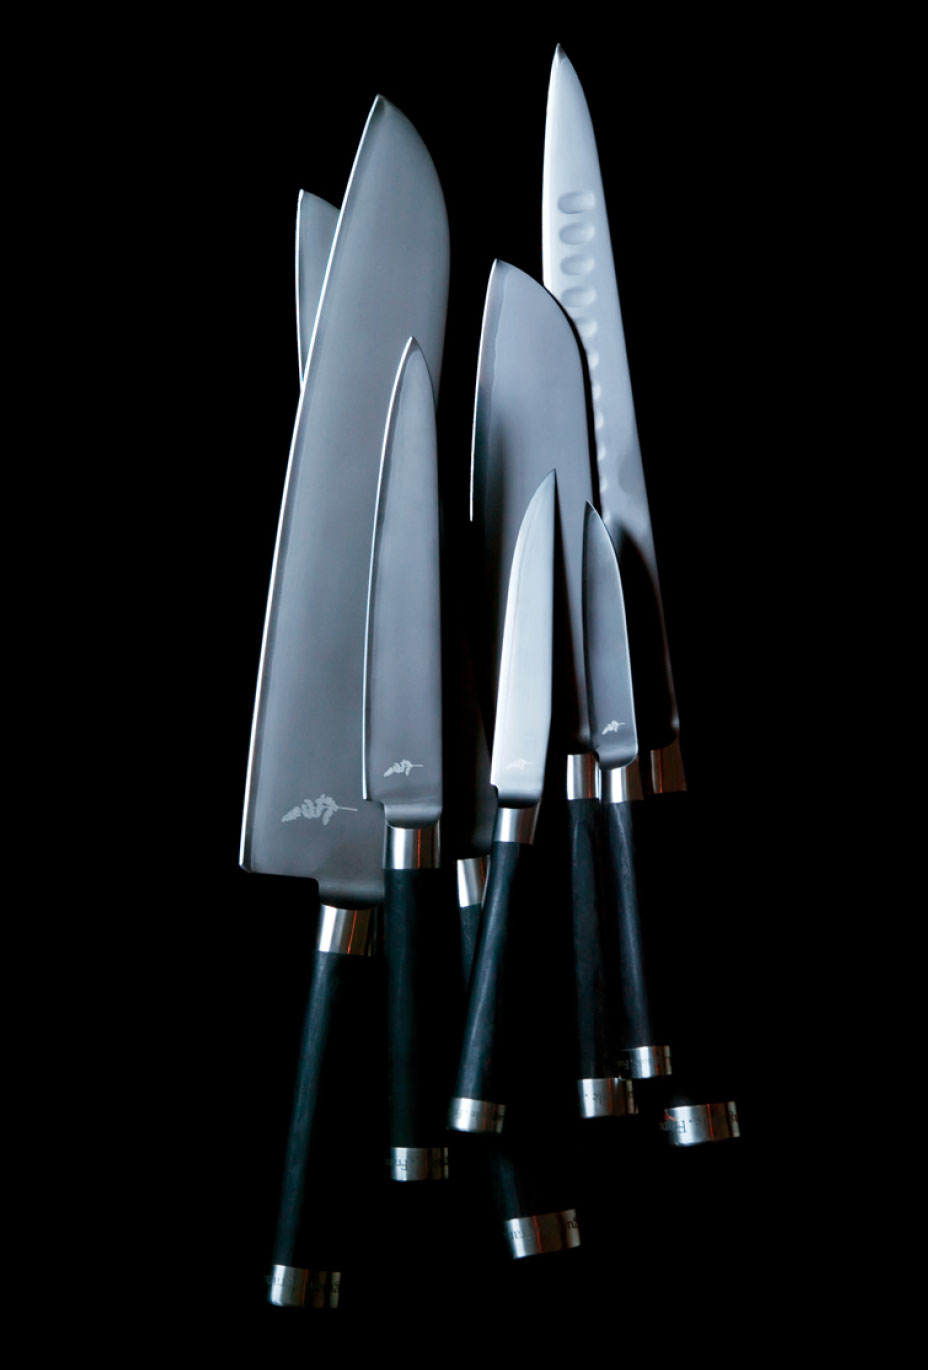 André et Michel Bras Set of 4 Full Black Vegetal Fiber Handle Steak Kn -  Forge de Laguiole USA